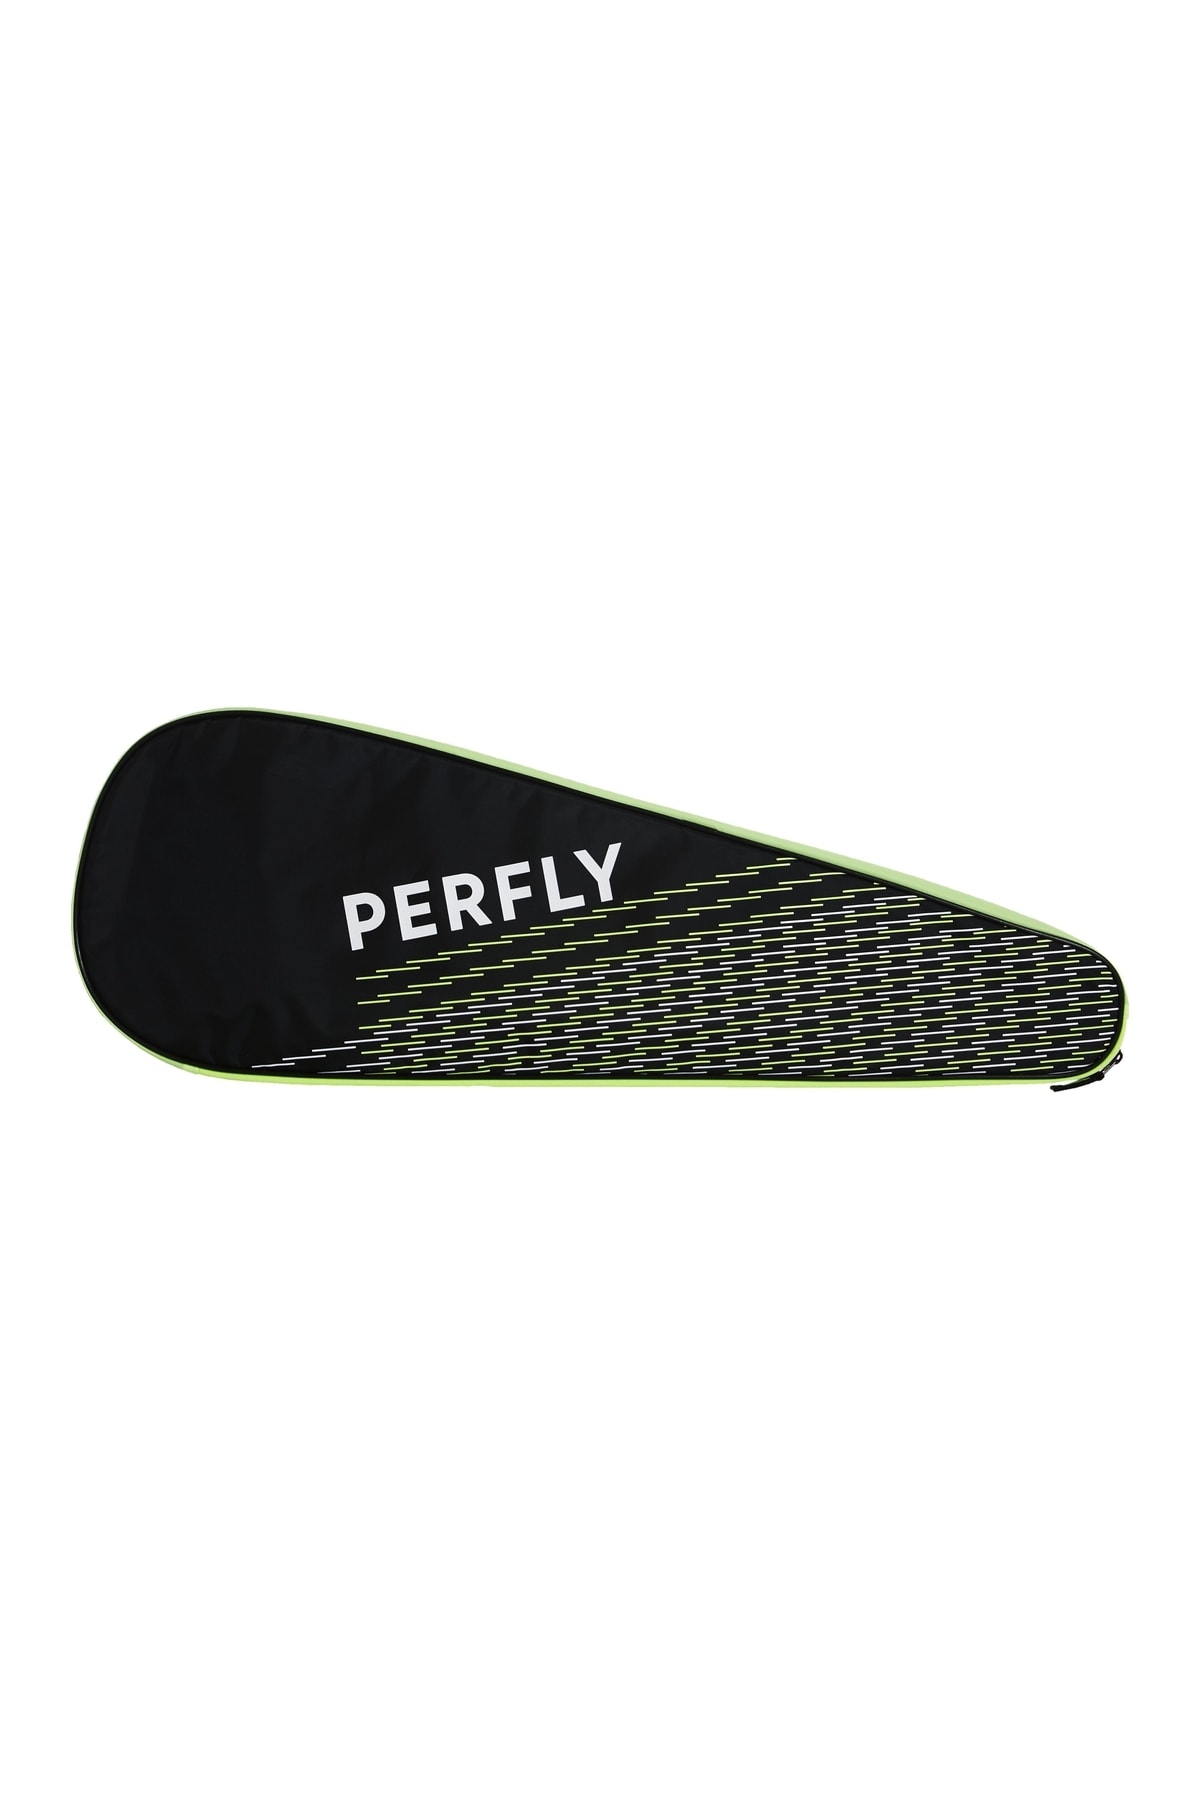 Decathlon Perfly Badminton Raketi Çantası - Yeşil - 190